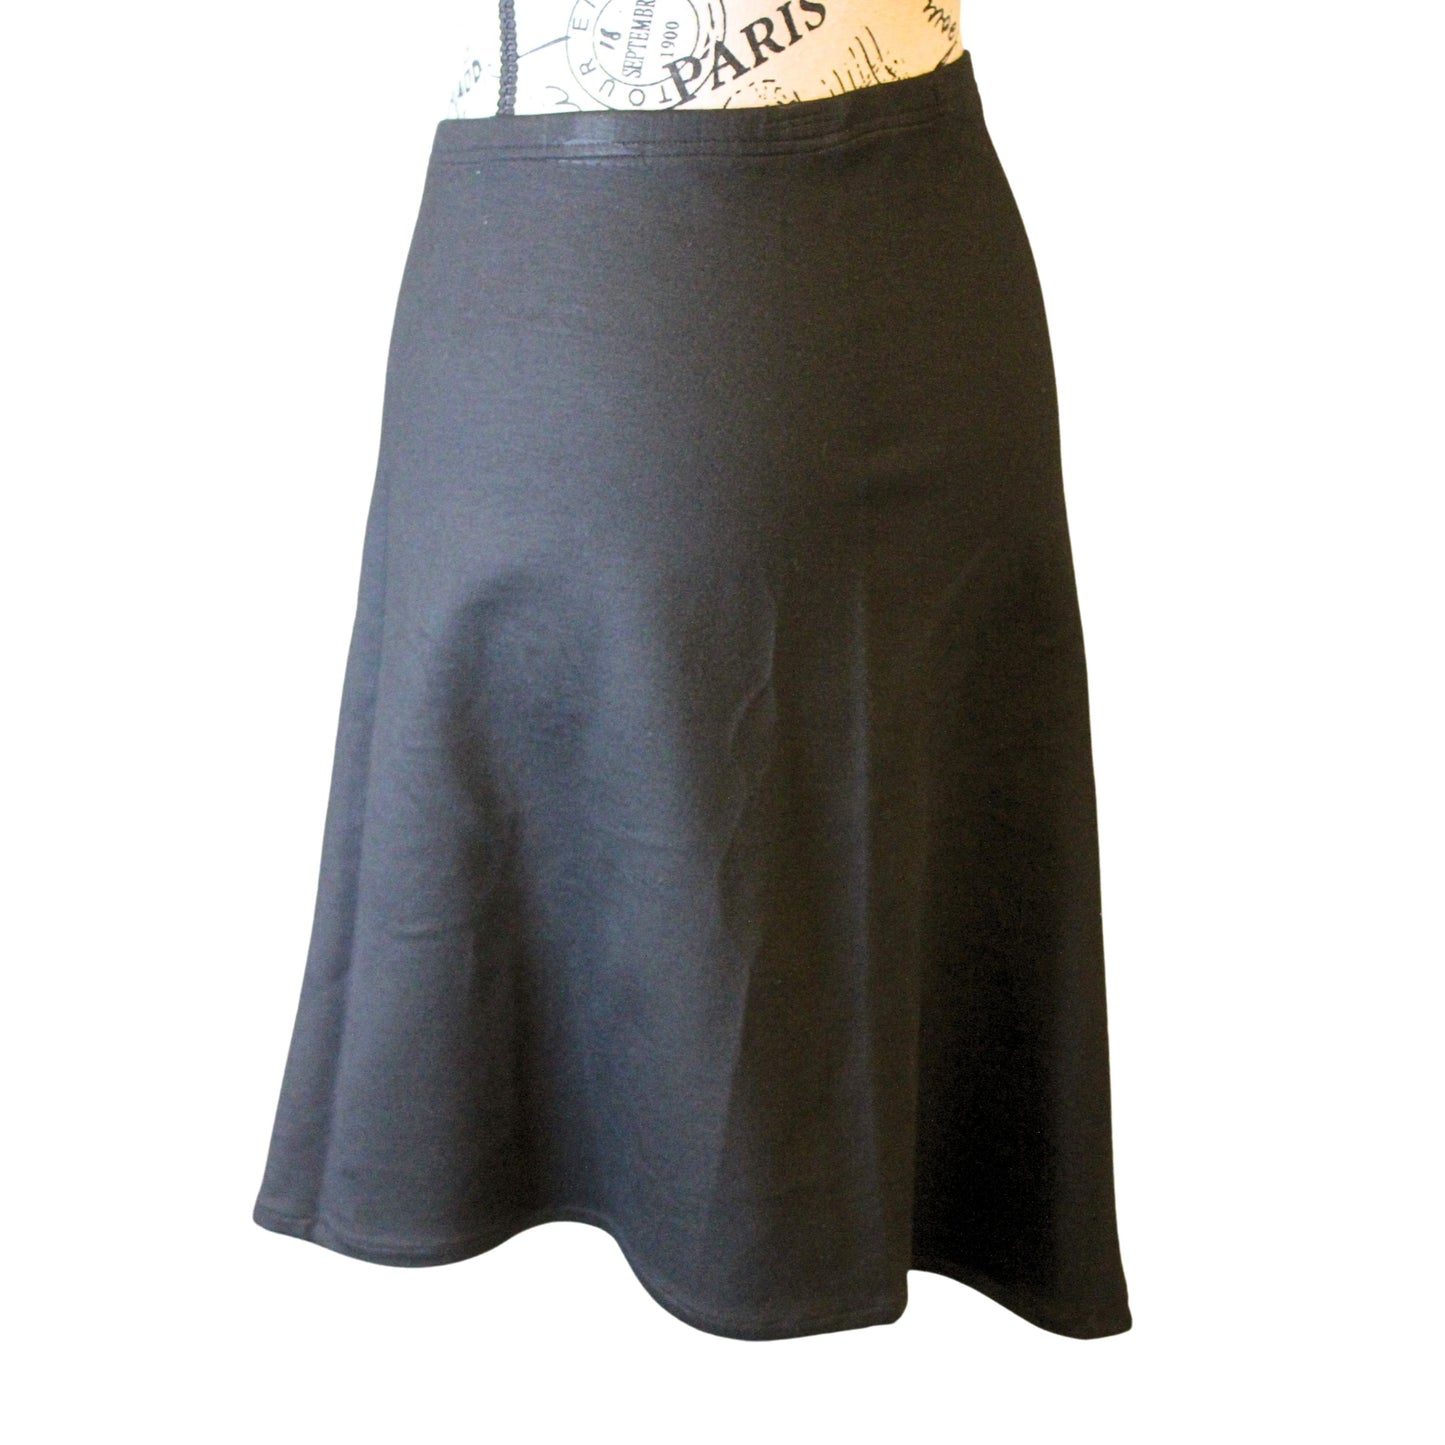 The VM Maestro Skirt